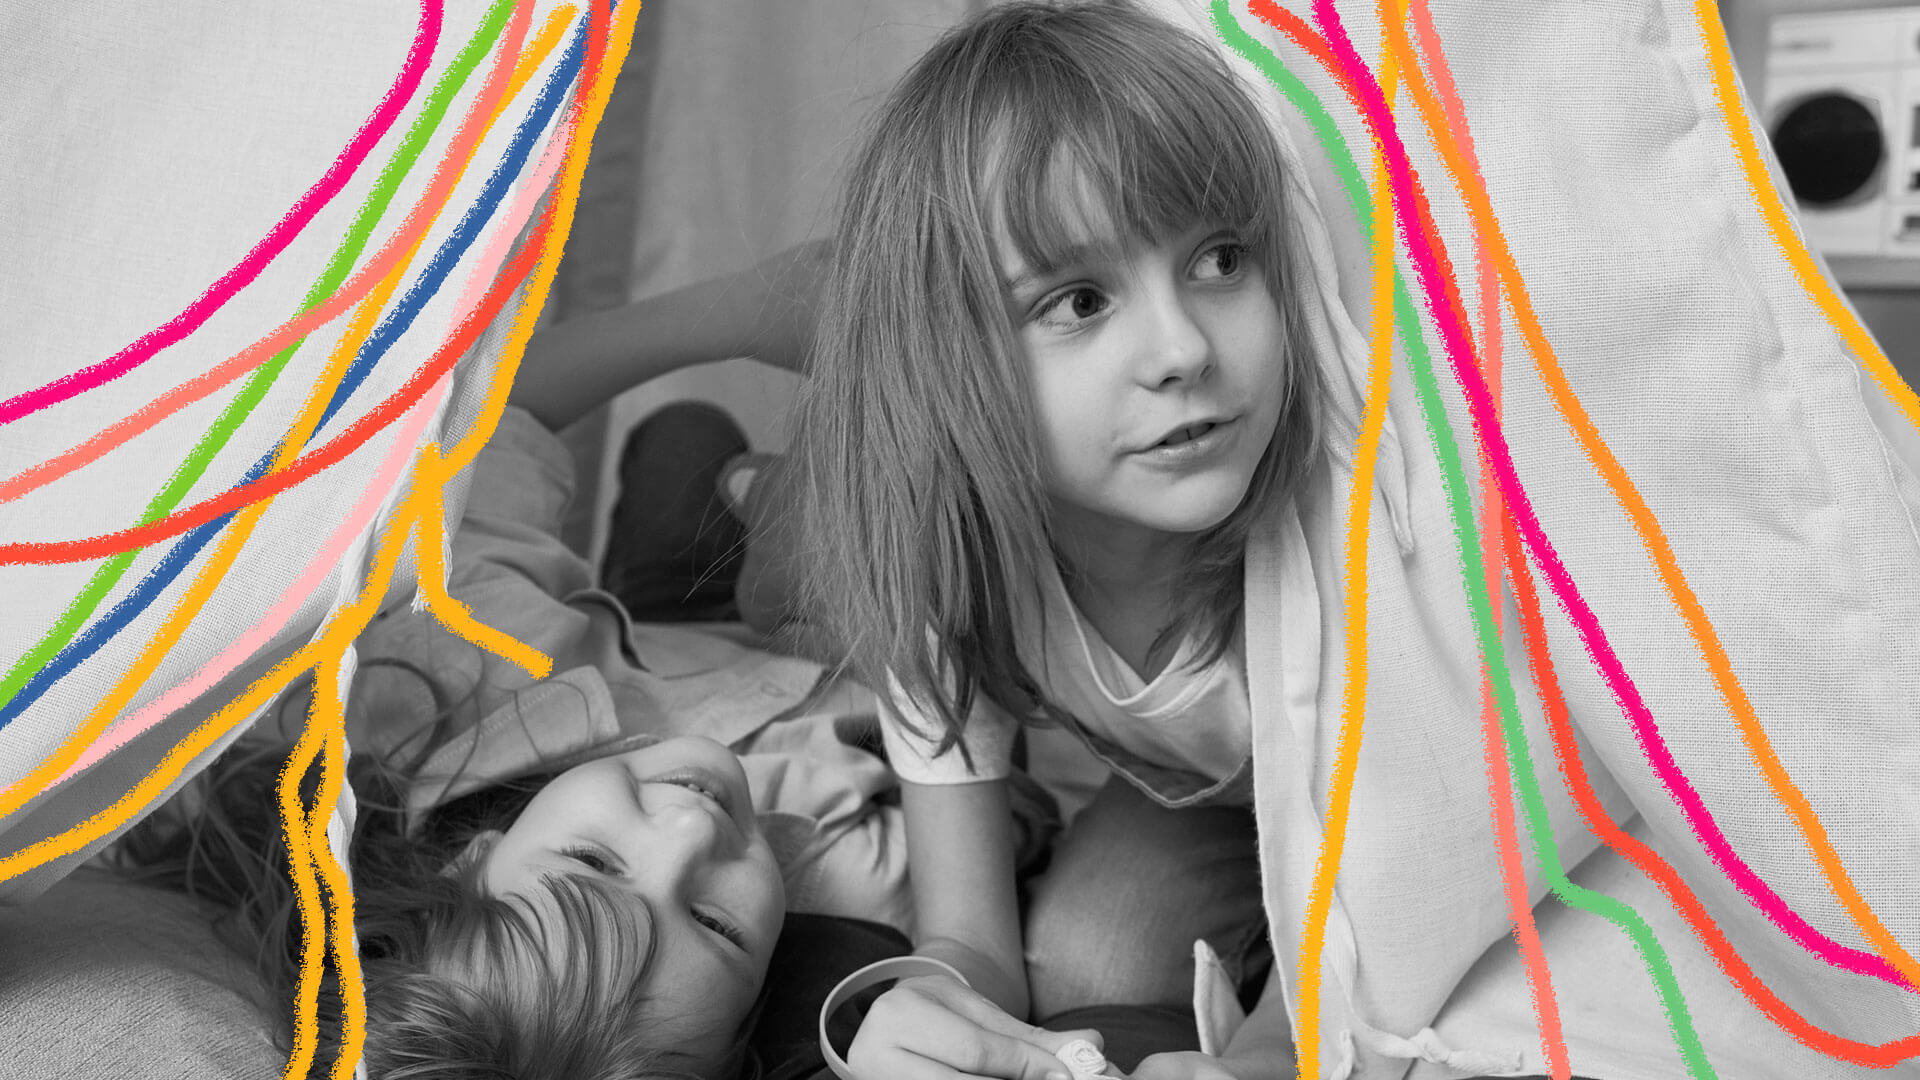 Brincadeiras para amigos em casa: foto de duas meninas que brincam debaixo de uma cabaninha de pano montada na sala. Grafismos coloridos enfeitam a imagem.